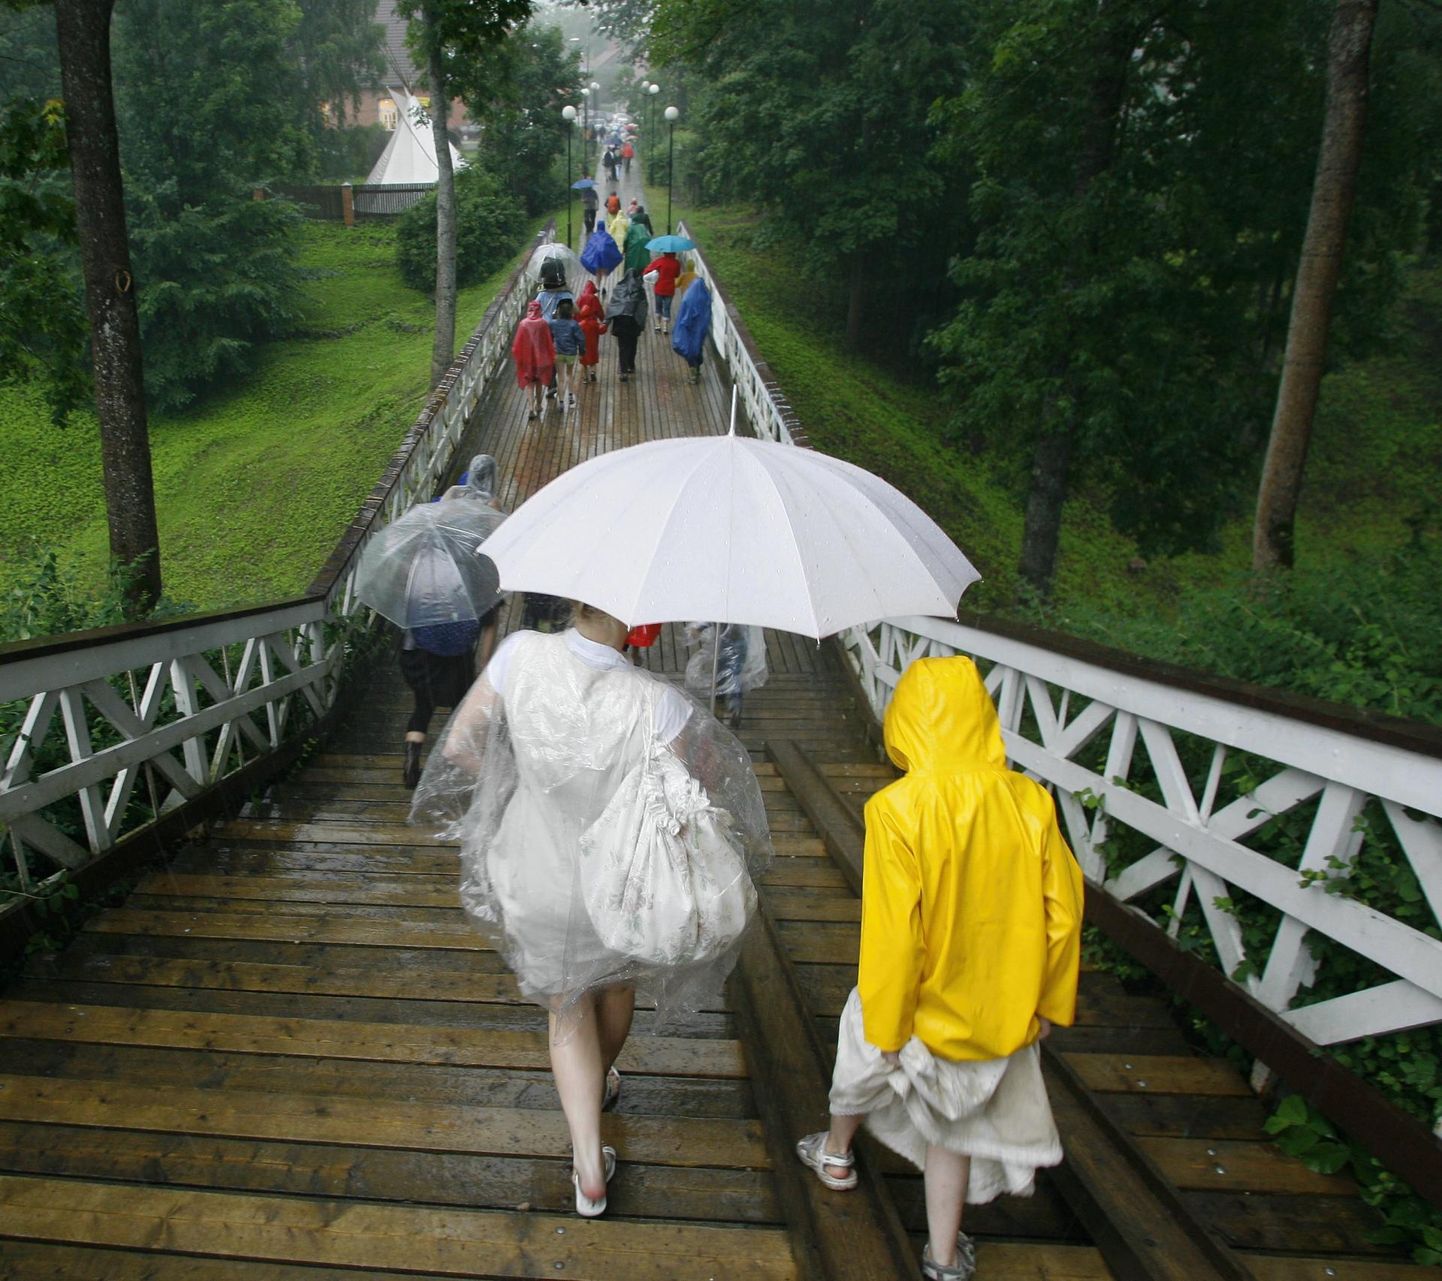 Lähipäevil tasub ennast soojemalt riidesse panna ja vihmavari igaks juhuks läheduses hoida.